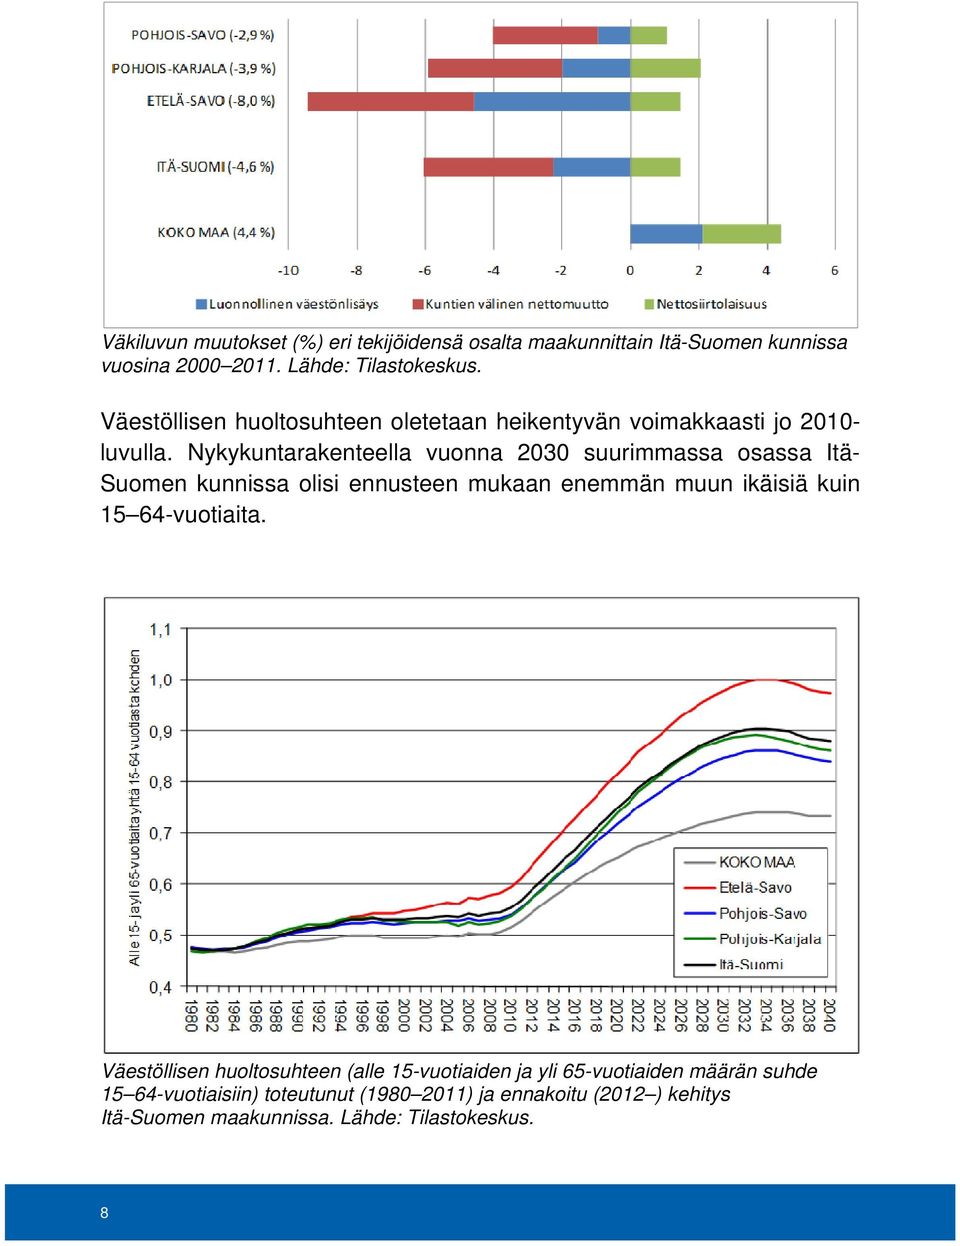 Nykykuntarakenteella vuonna 2030 suurimmassa osassa Itä- Suomen kunnissa olisi ennusteen mukaan enemmän muun ikäisiä kuin 15